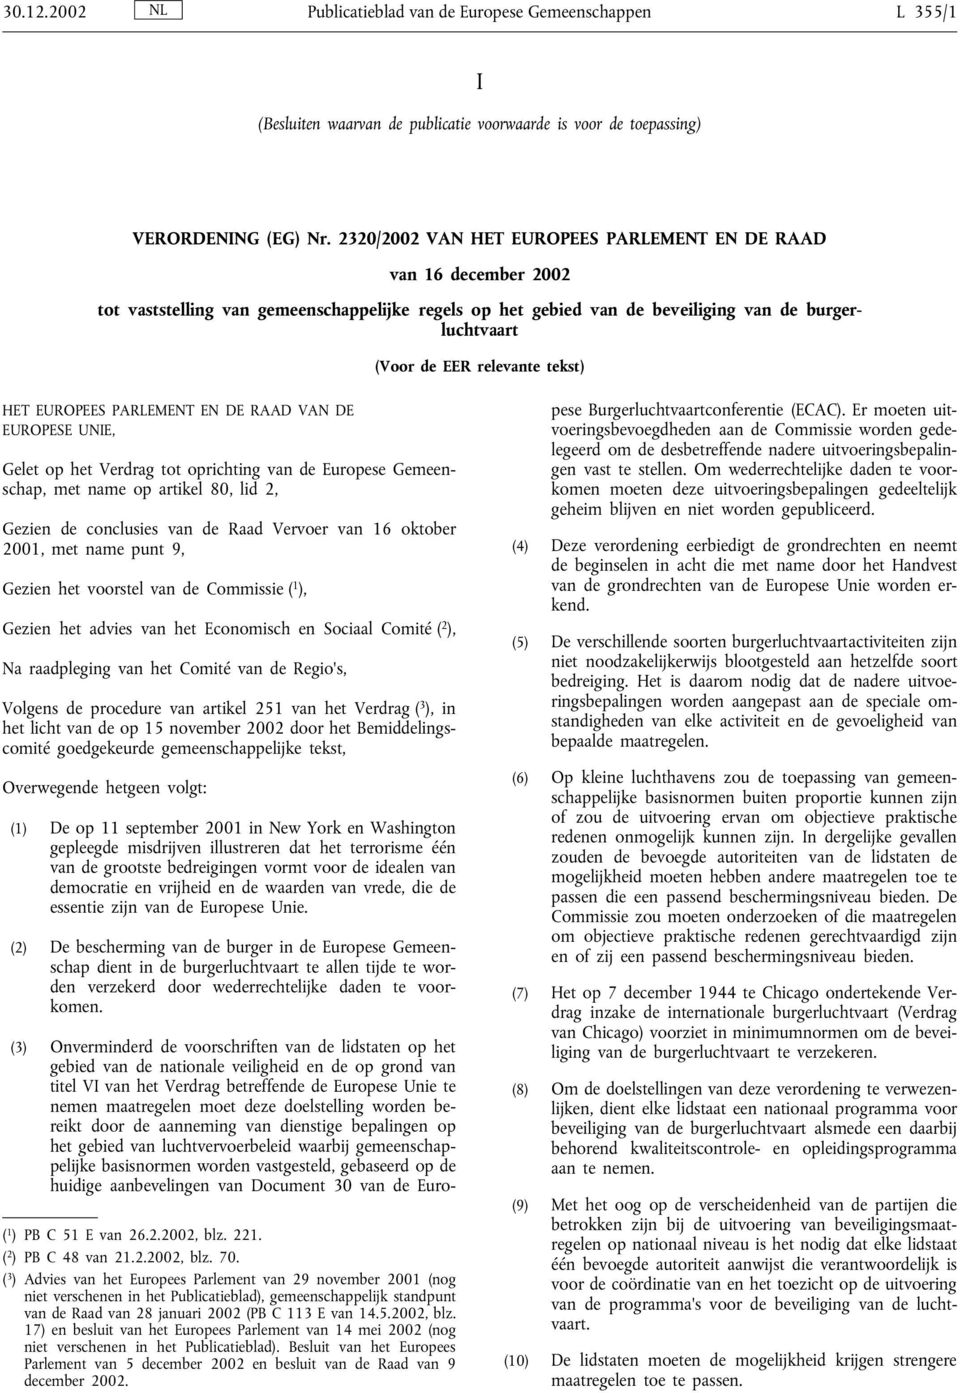 tekst) HET EUROPEES PARLEMENT EN DE RAAD VAN DE EUROPESE UNIE, Gelet op het Verdrag tot oprichting van de Europese Gemeenschap, met name op artikel 80, lid 2, Gezien de conclusies van de Raad Vervoer